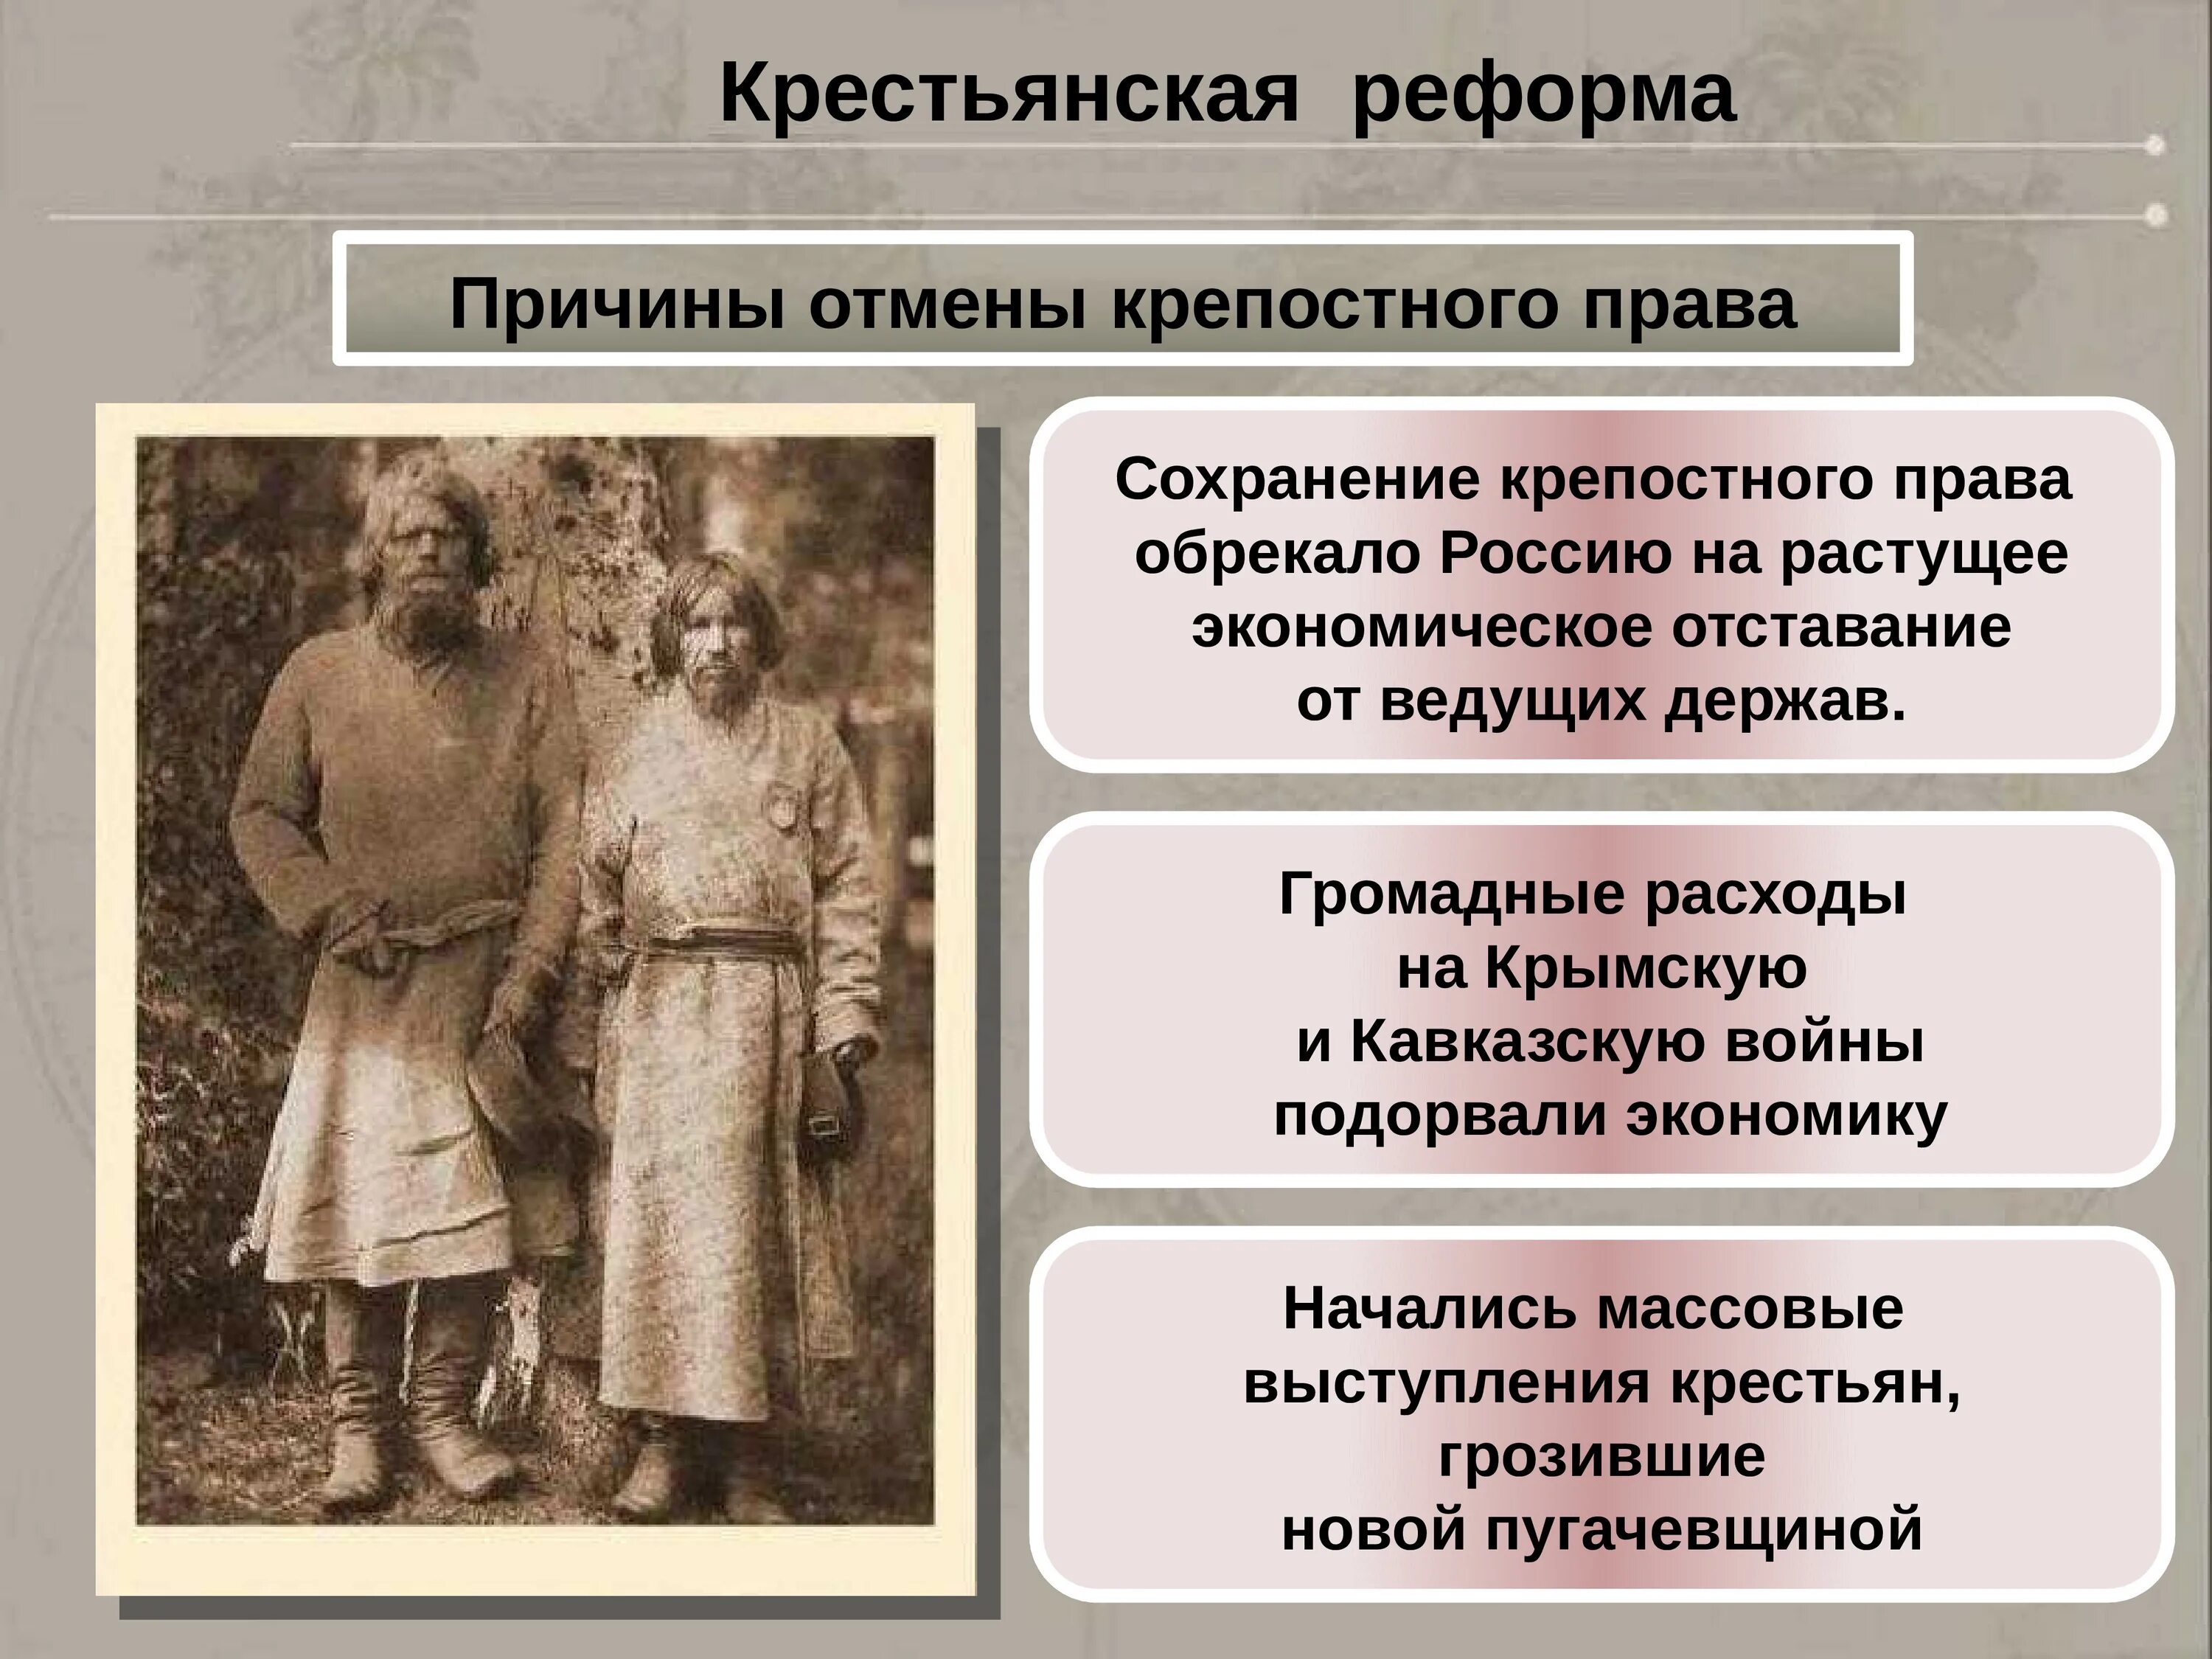 Крепостное право в России 19 века.